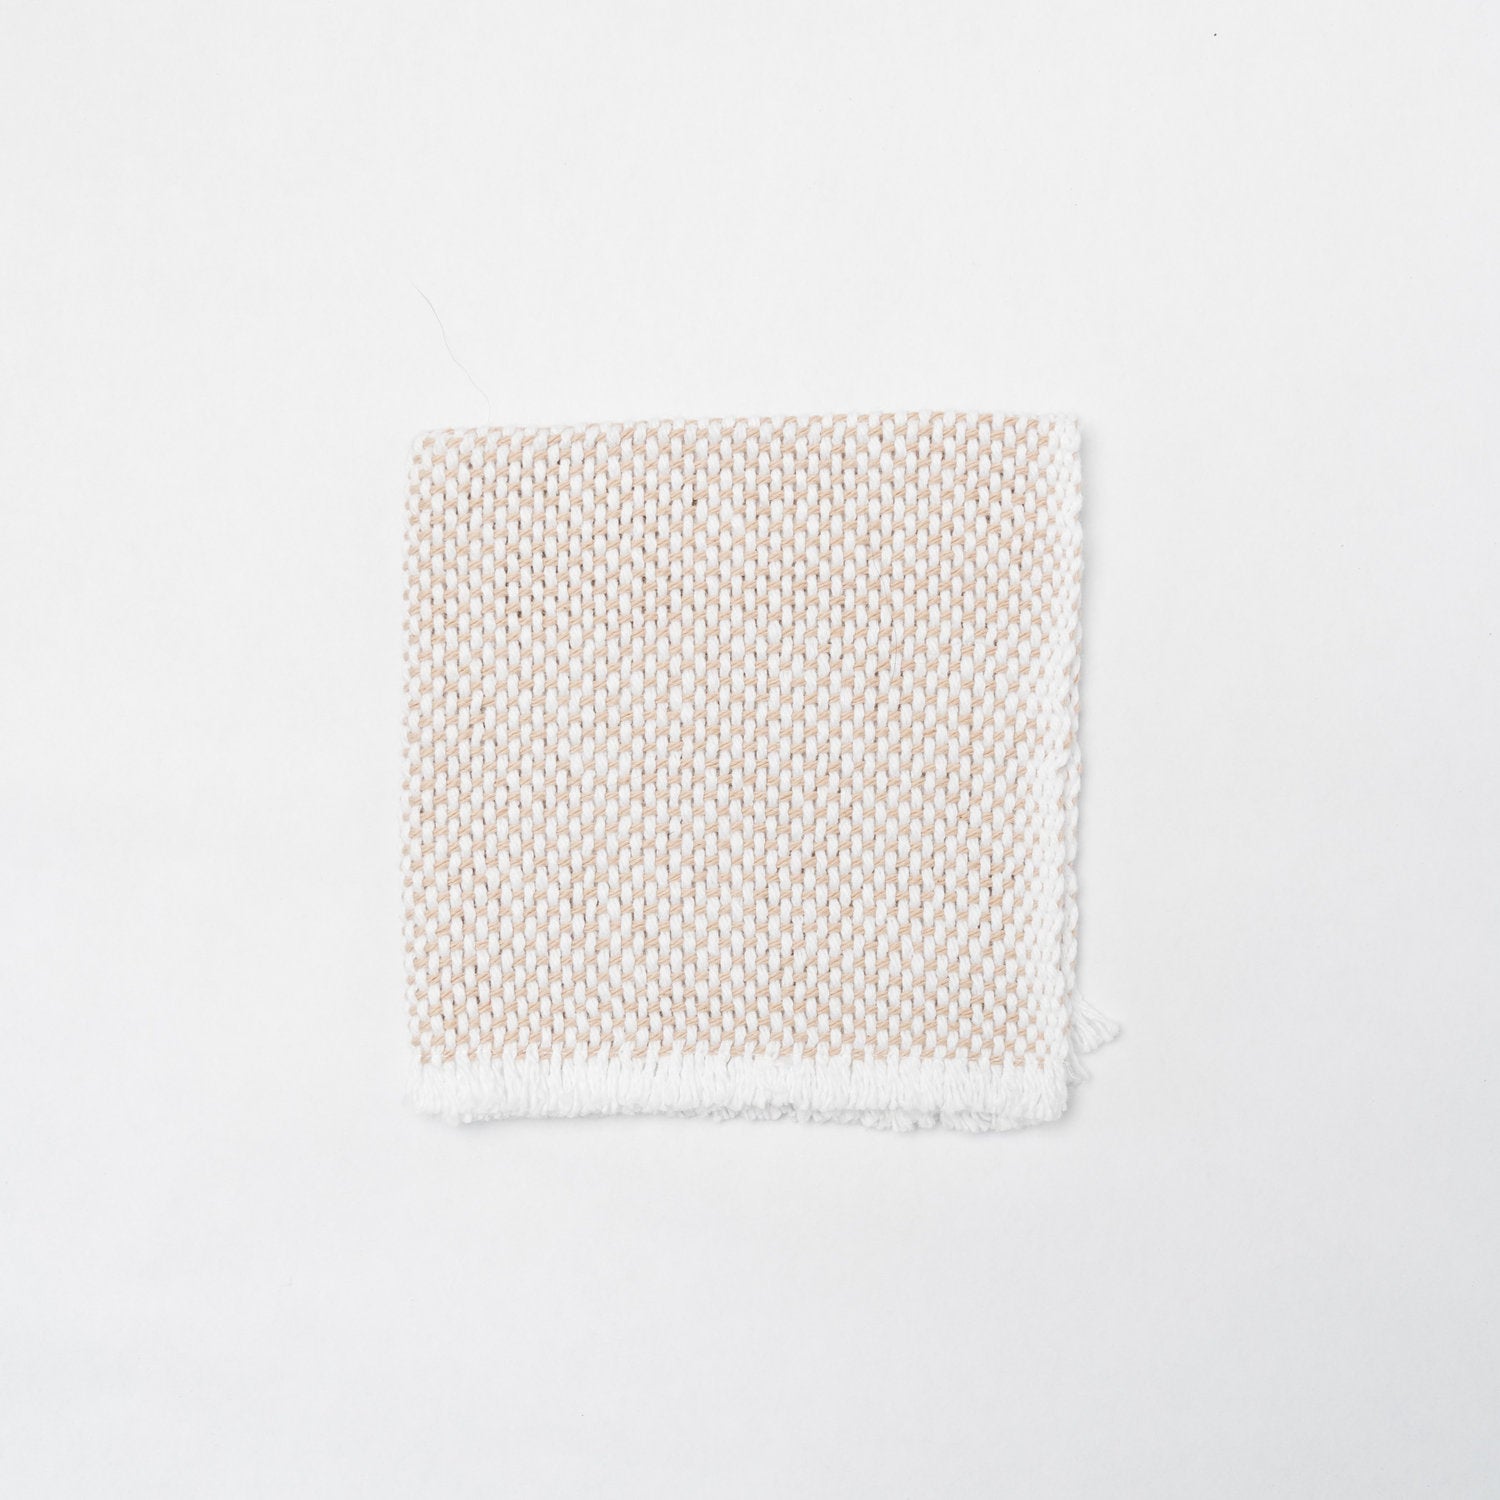 KD Weave Tan + White Wash Cloth, Set of 2